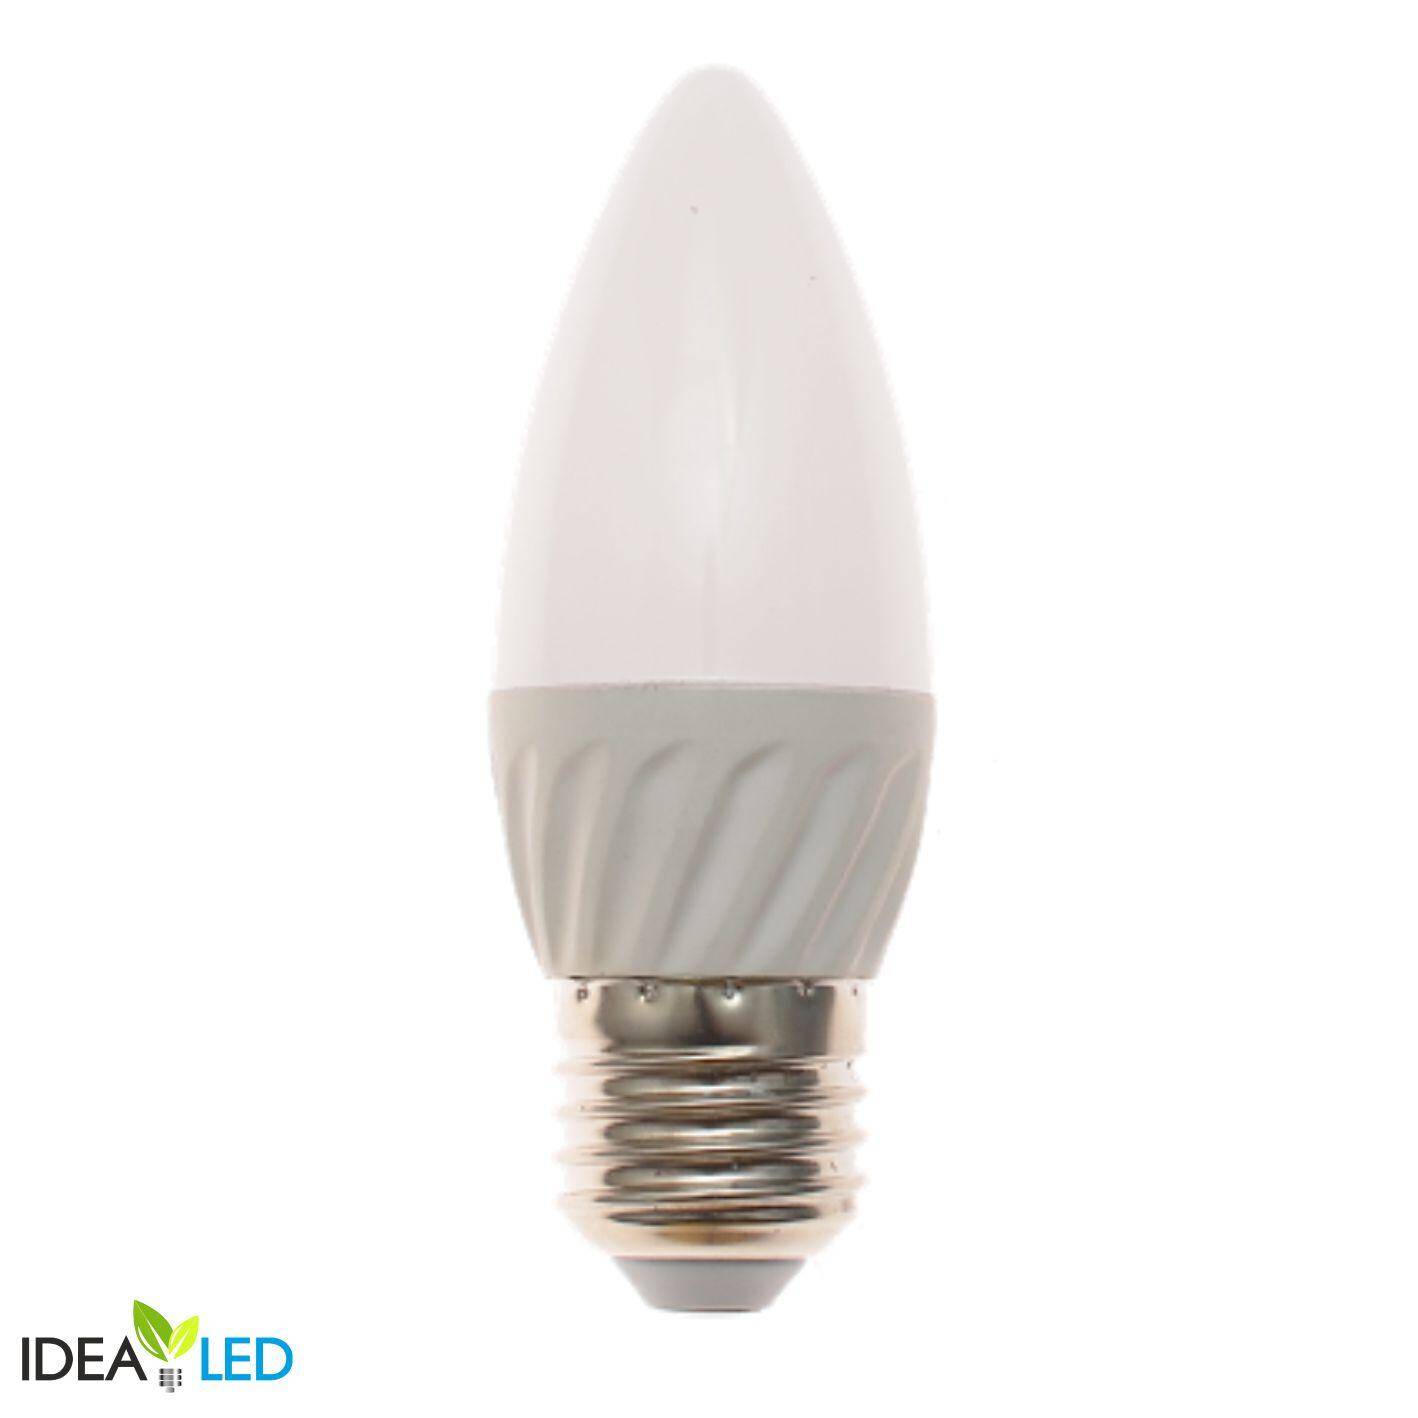 LED bulb SMD 2835 E27 candle 6W - cool white